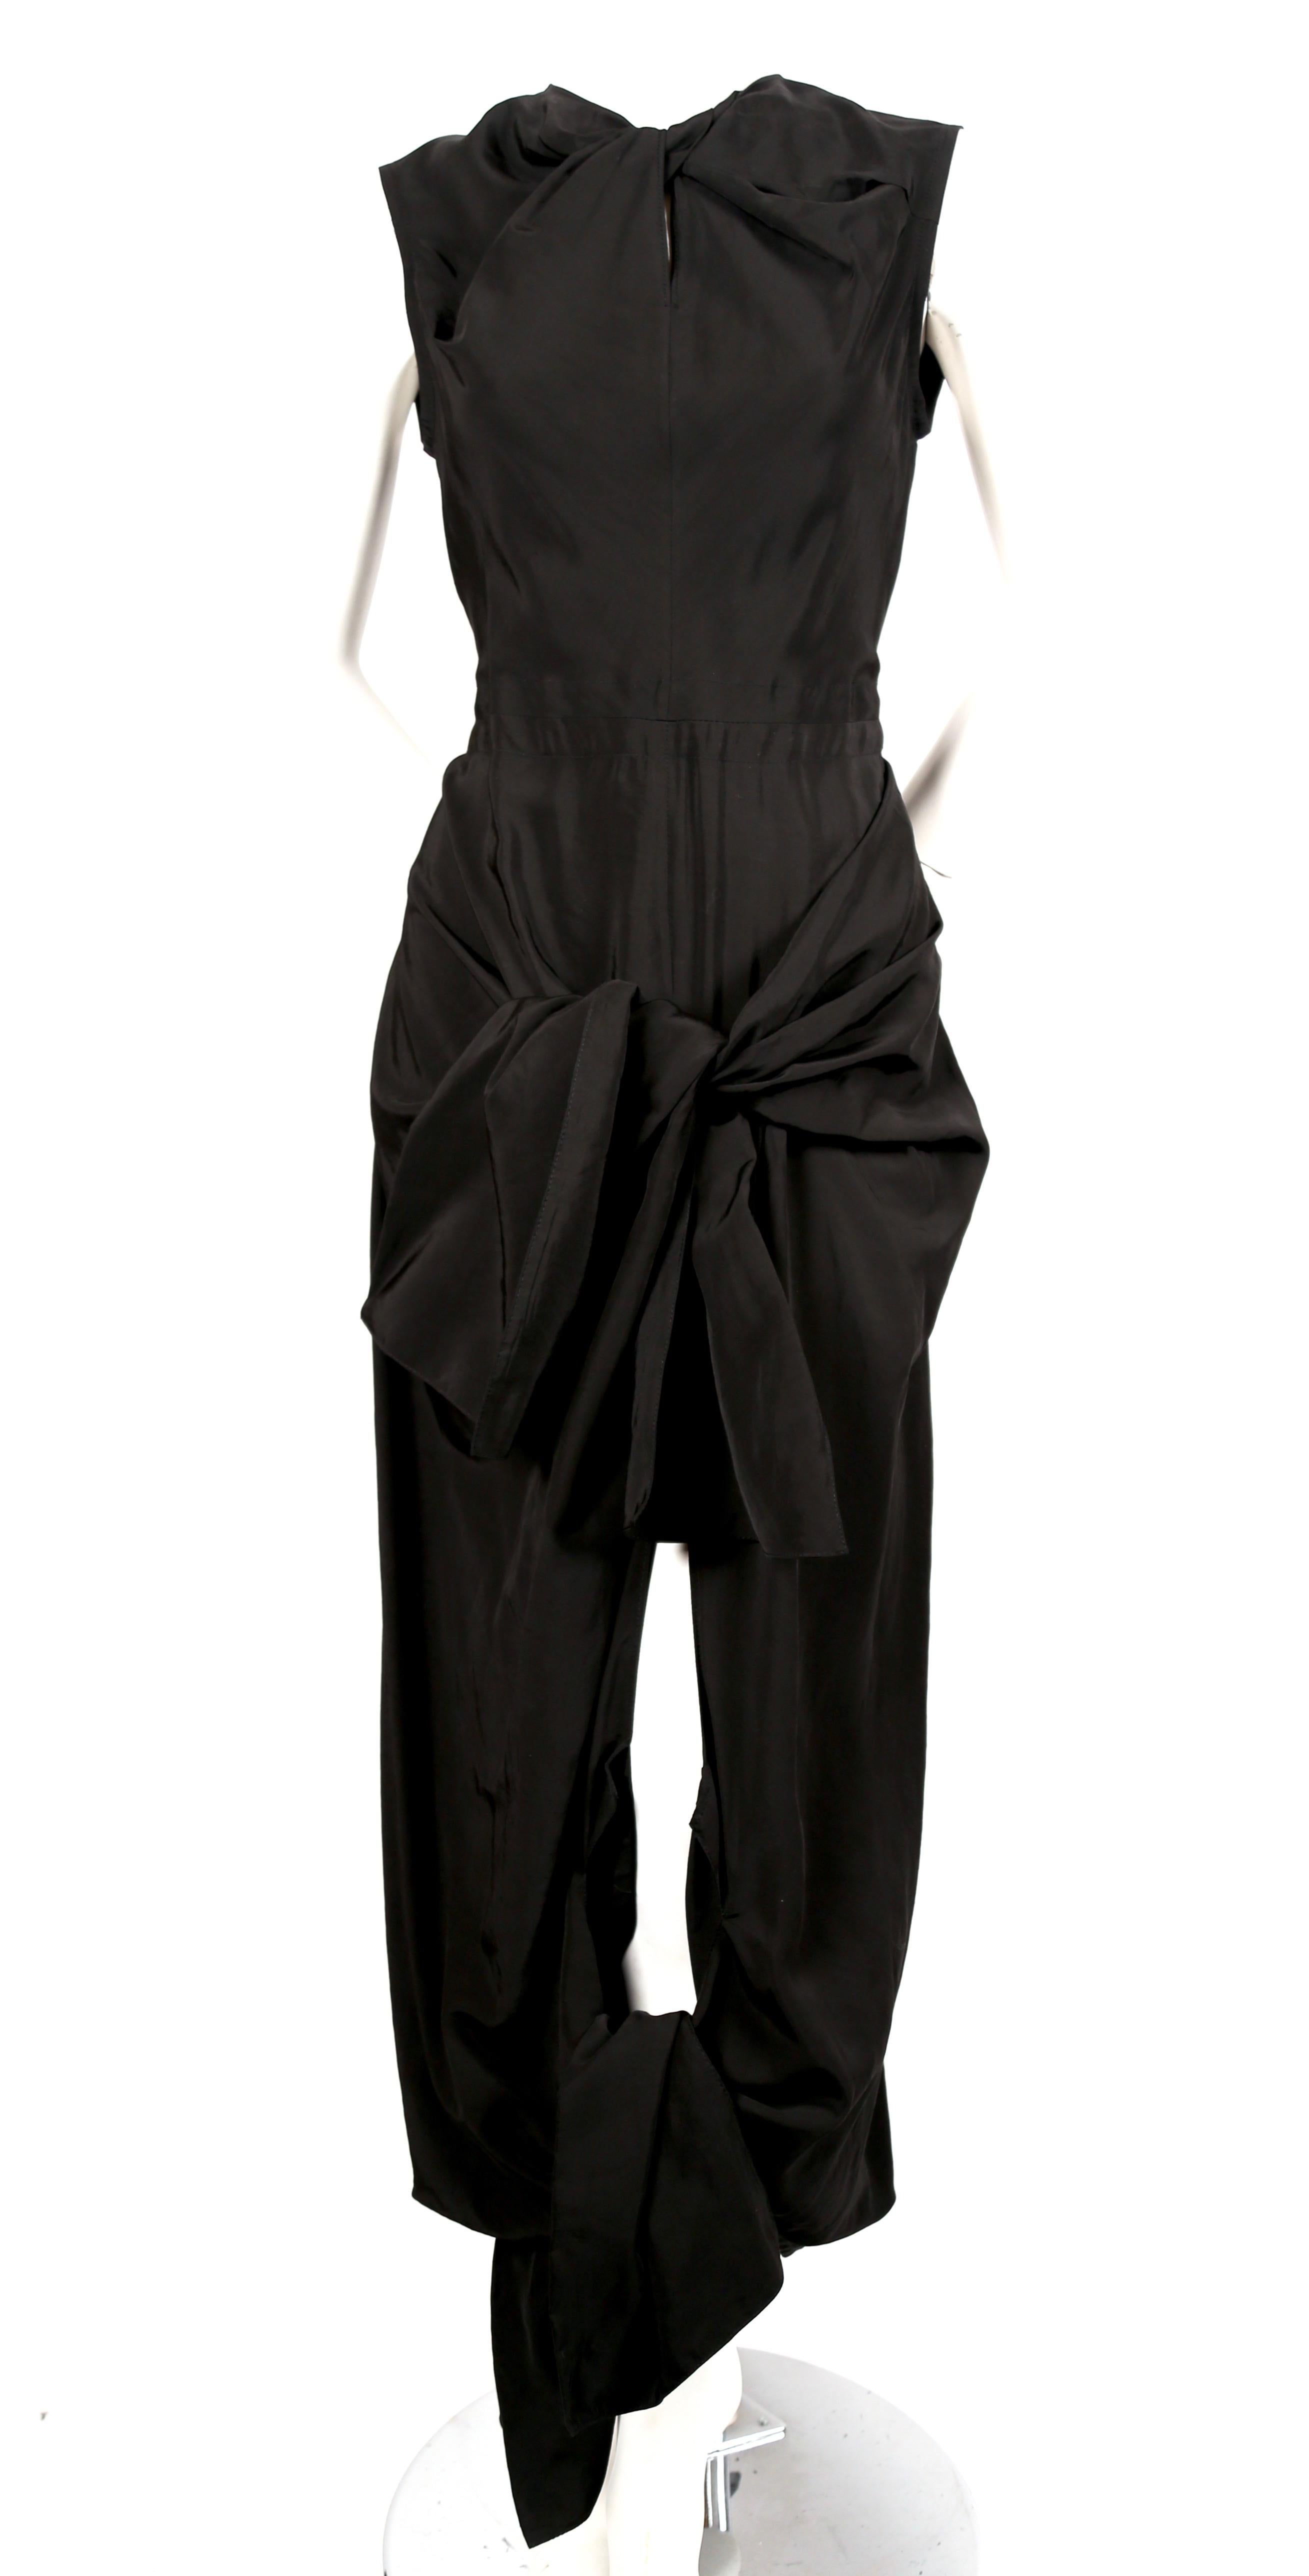 Tiefschwarzes Kleid mit gedrehtem Ausschnitt, Bindebändern an der Hüfte und Rückenausschnitt, entworfen von Phoebe Philo für Celine. Französische Größe 36. Ungefähre Maße: Schulter 13,75